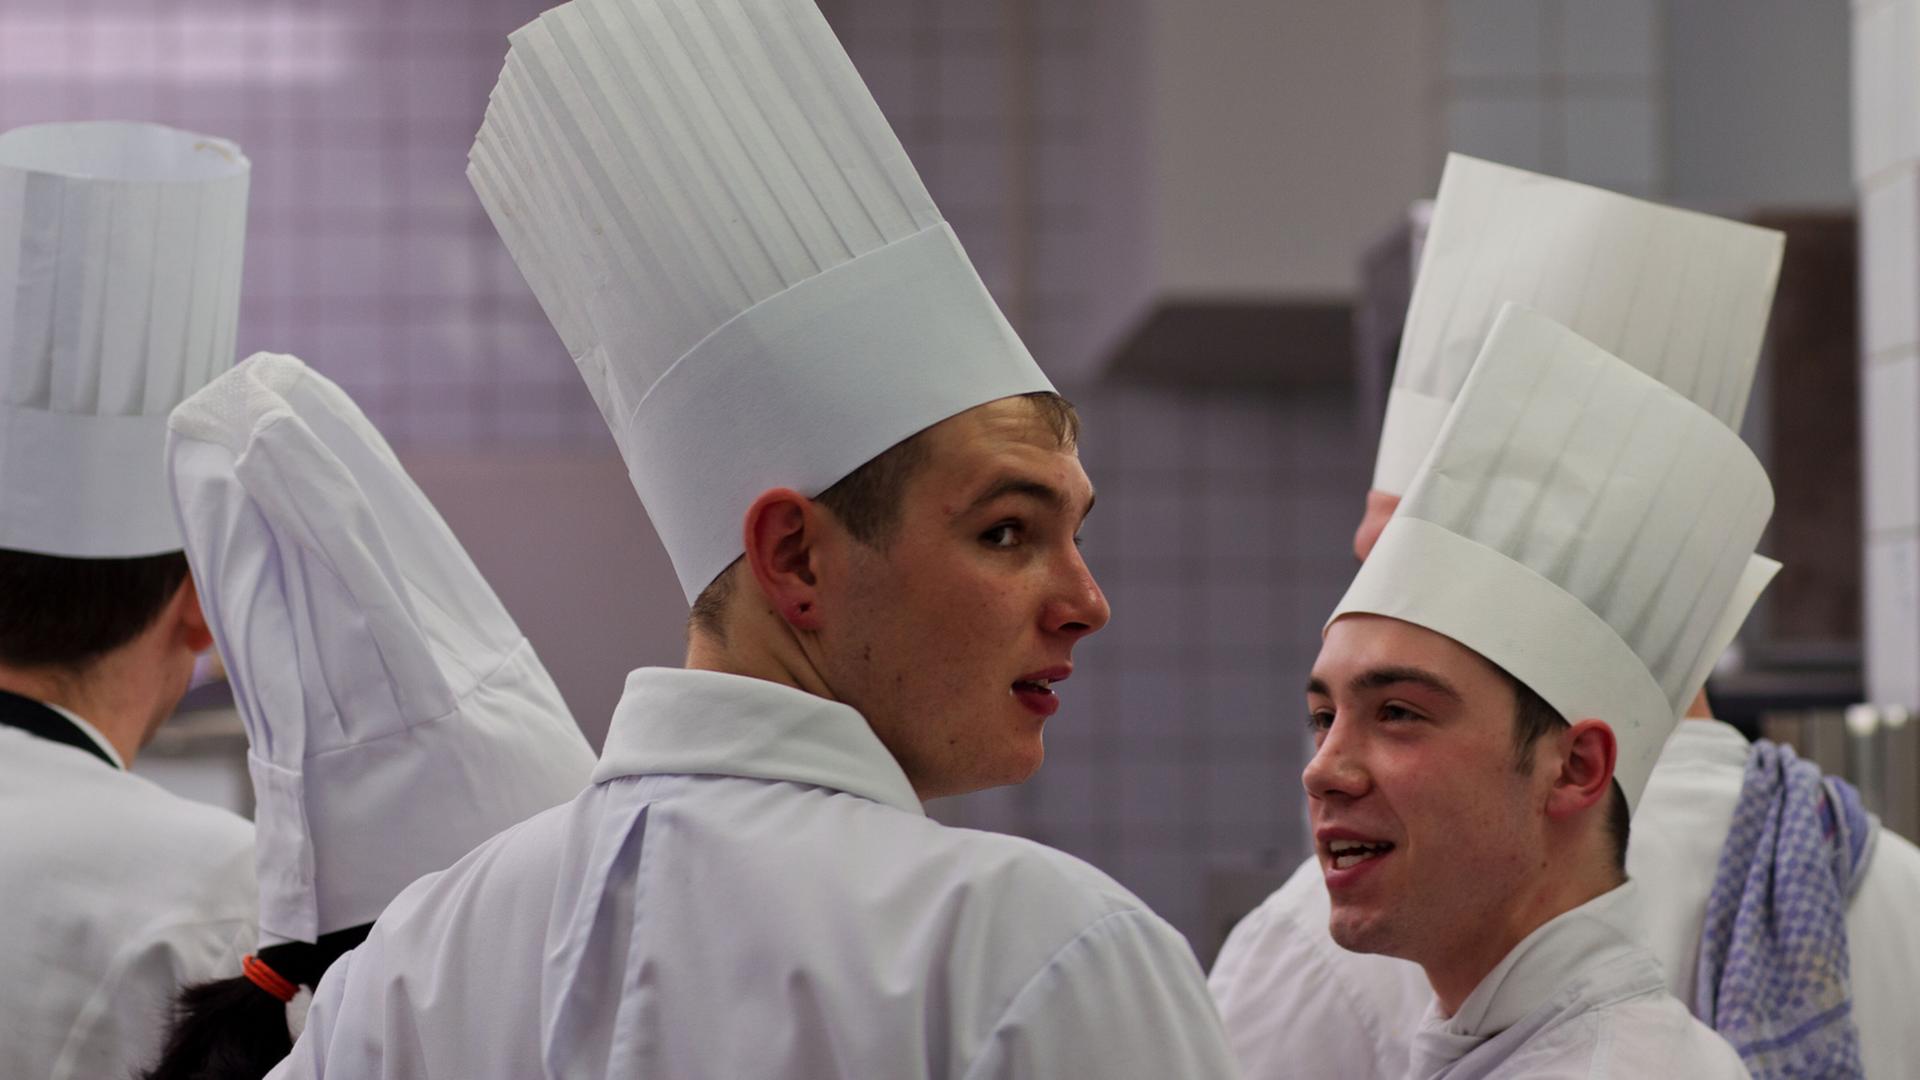 Mehrere Kochlehrlinge mit hohen weißen Kochmützen stehen bei einem Wettbewerb in einer Großküche.